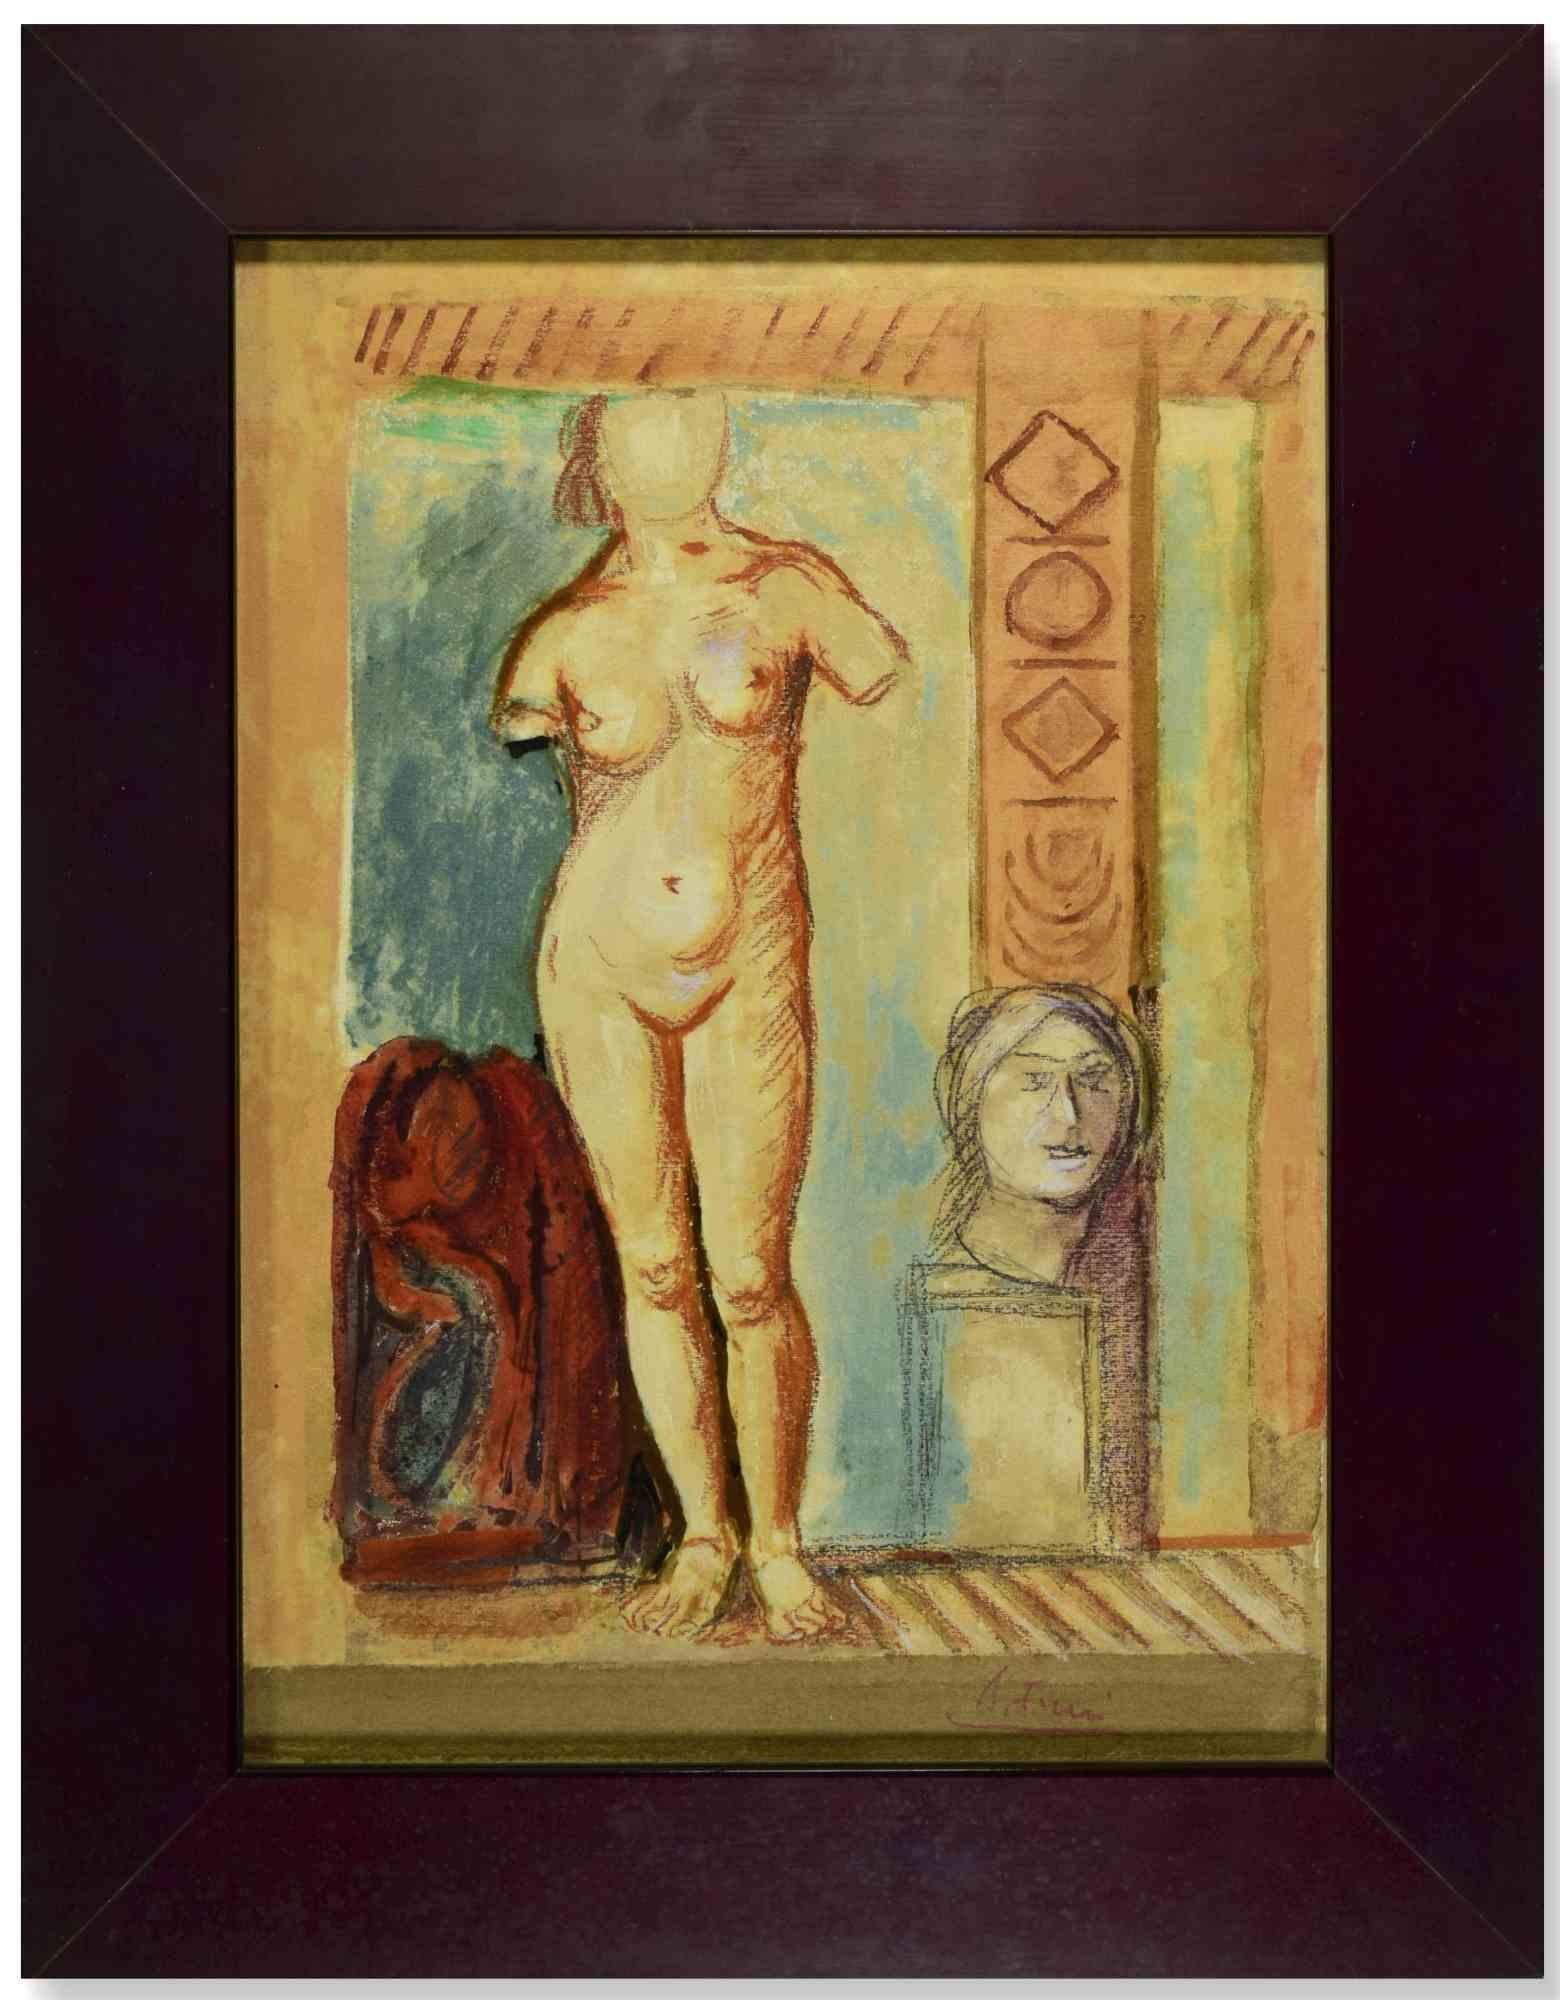 La femme nue est une œuvre d'art moderne réalisée par Achille Funi au début du 20e siècle.

Technique mixte sur contreplaqué.

Signé à la main dans la marge inférieure.

Inclut le cadre.